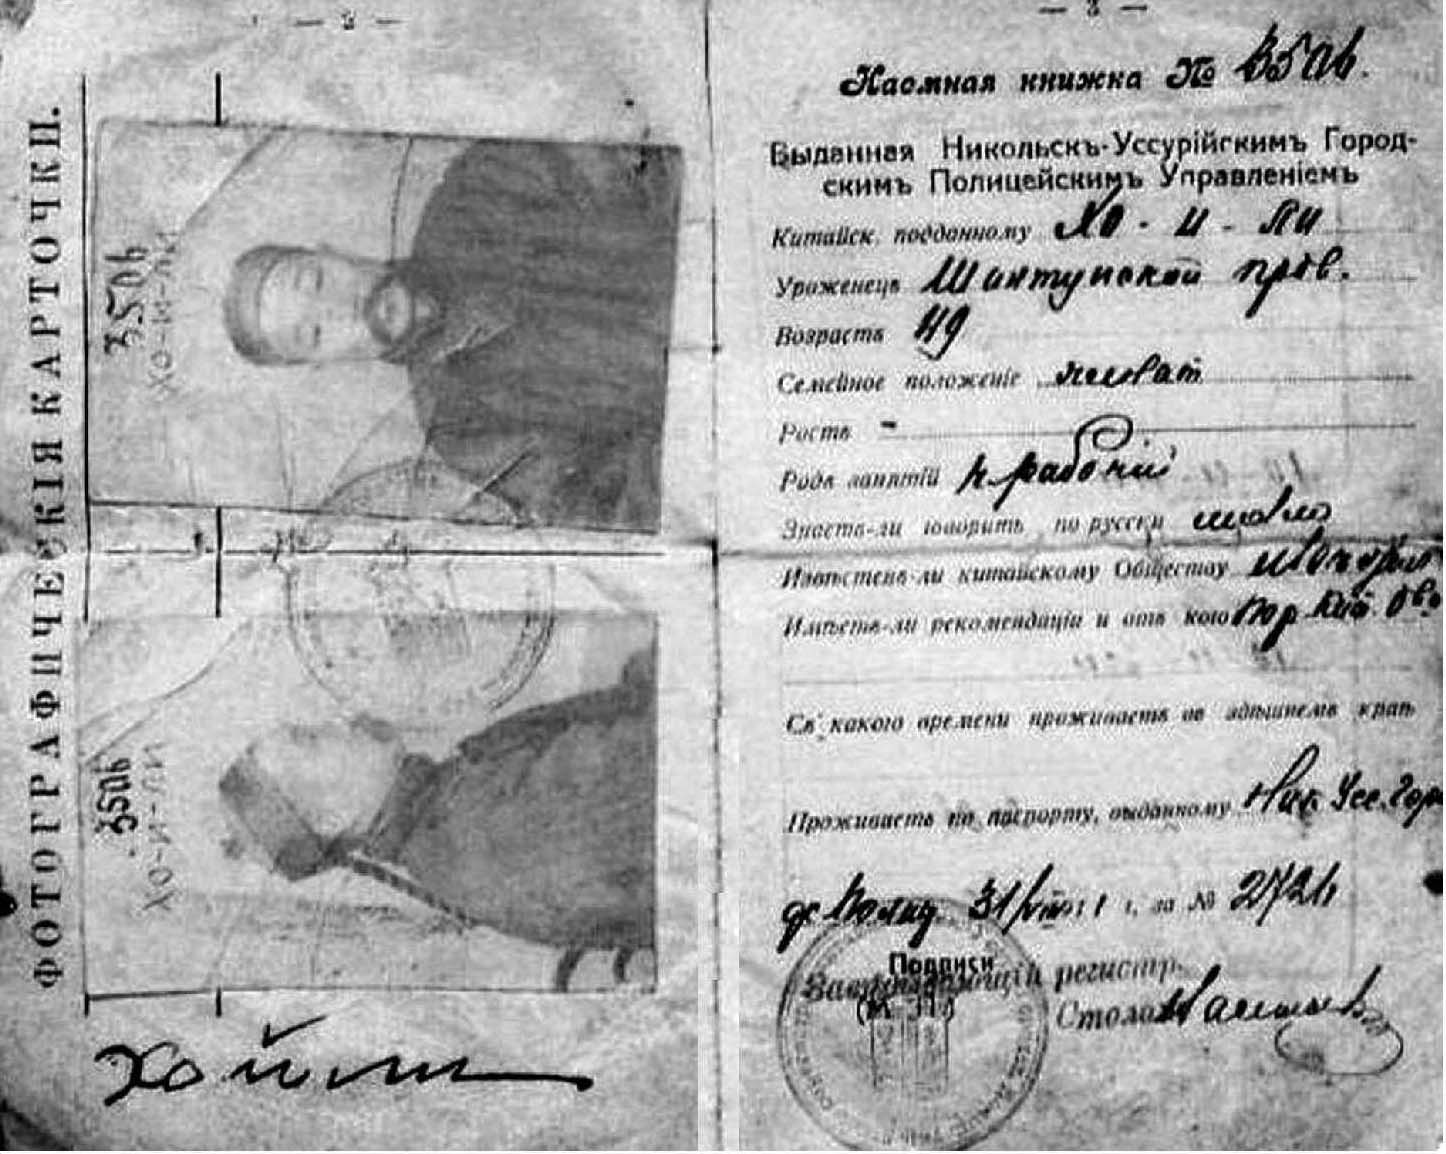 1911年俄罗斯地方政府为旅俄华工签署的外国人登记卡